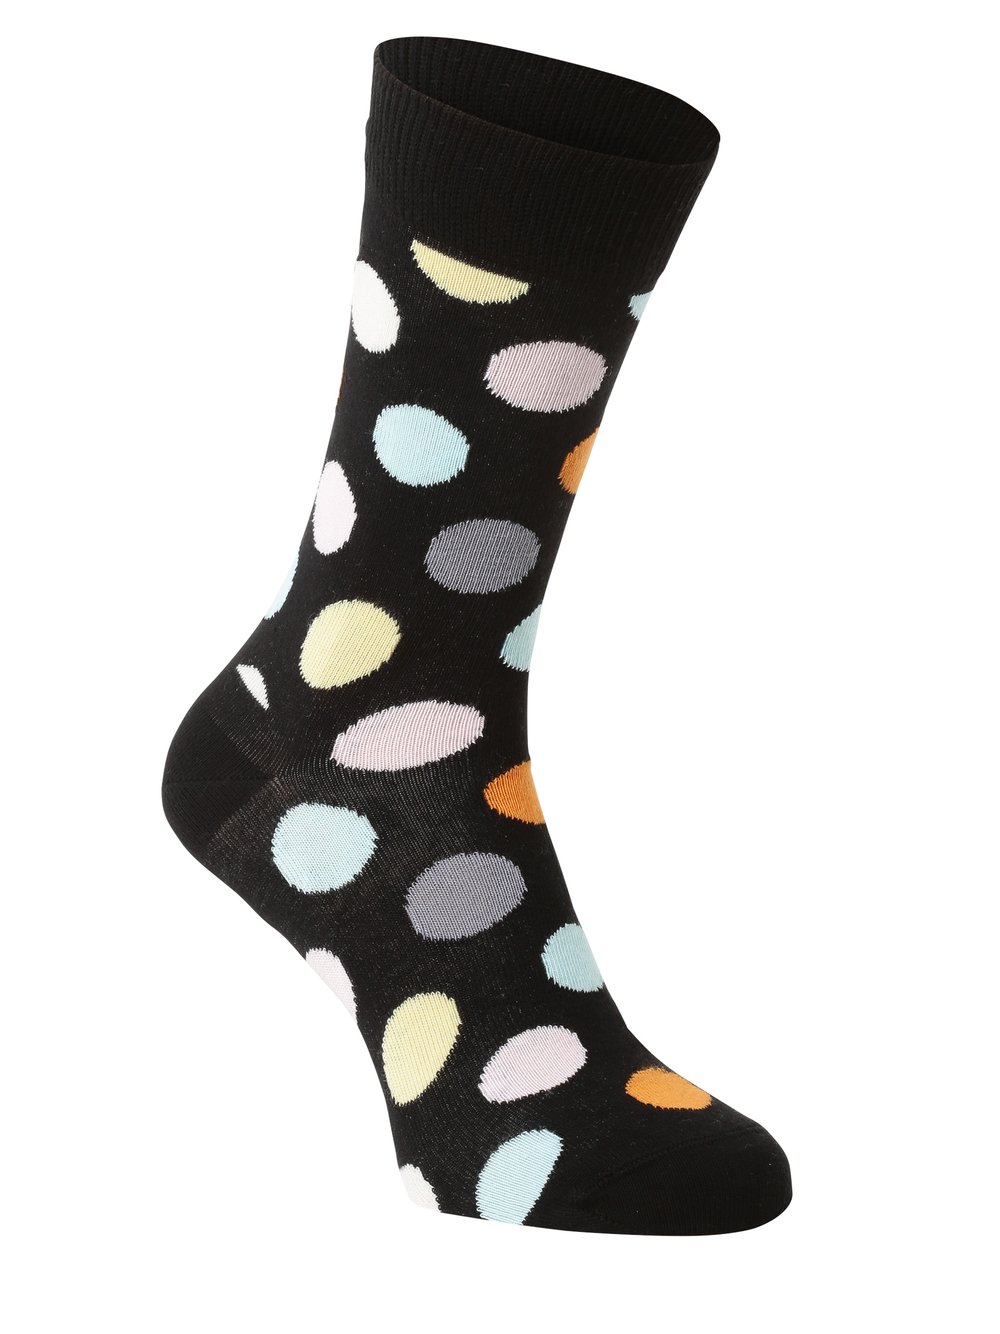 Happy Socks - Skarpety męskie, czarny|wielokolorowy